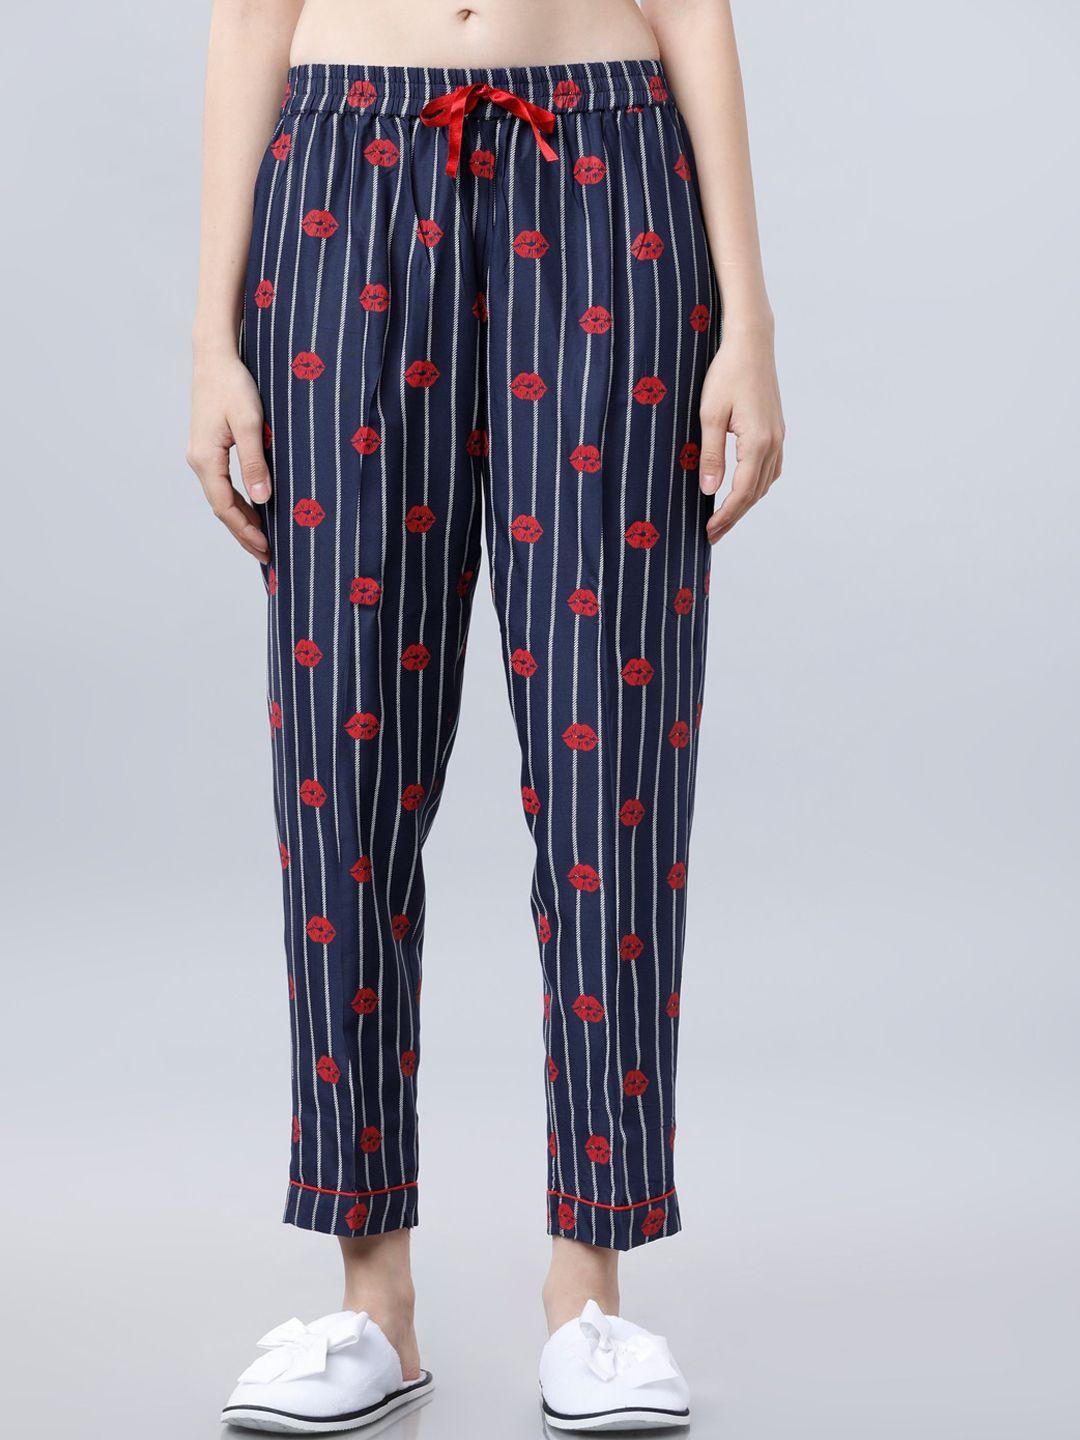 tokyo talkies women navy blue & red printed lounge pants